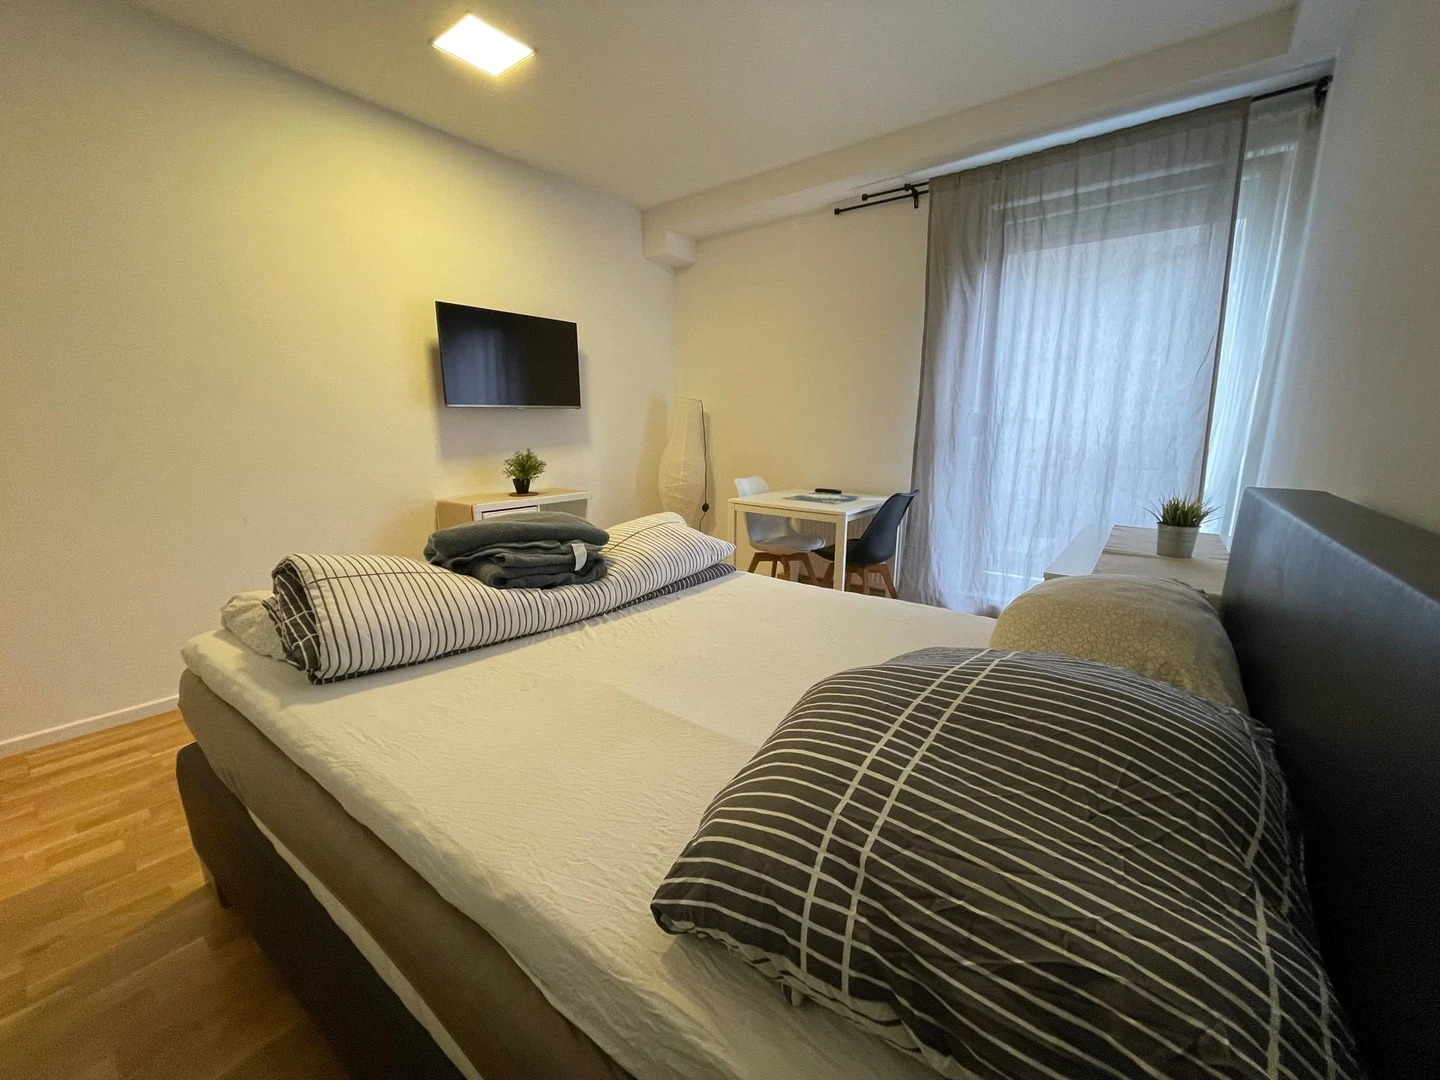 Karlsruhe de çift kişilik yataklı kiralık oda